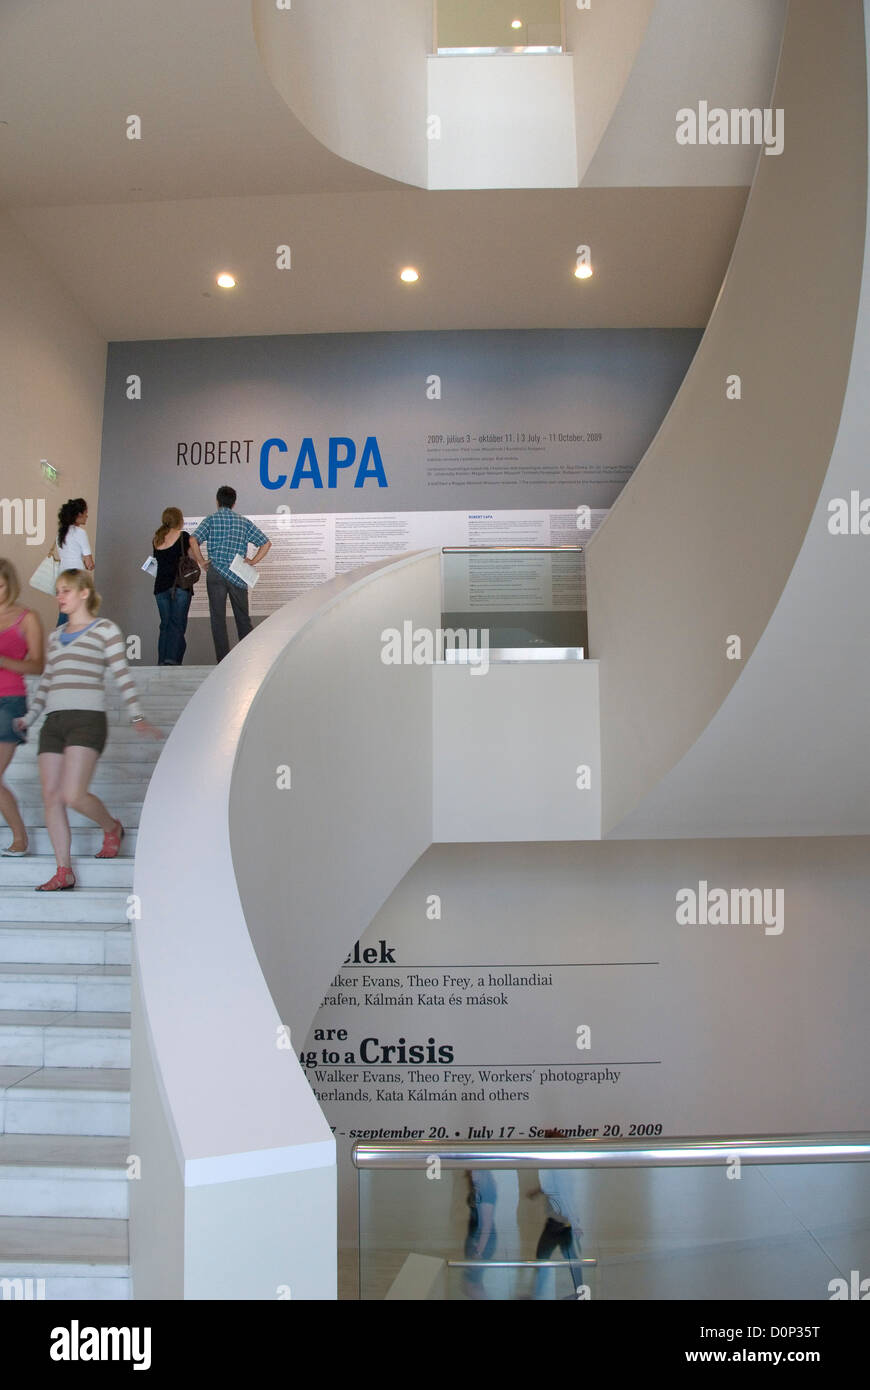 Robert Capa exposition, les visiteurs dans les escaliers, Ludwig Museum, Musée d'Art Contemporain, Budapest, Hongrie, Europe Banque D'Images